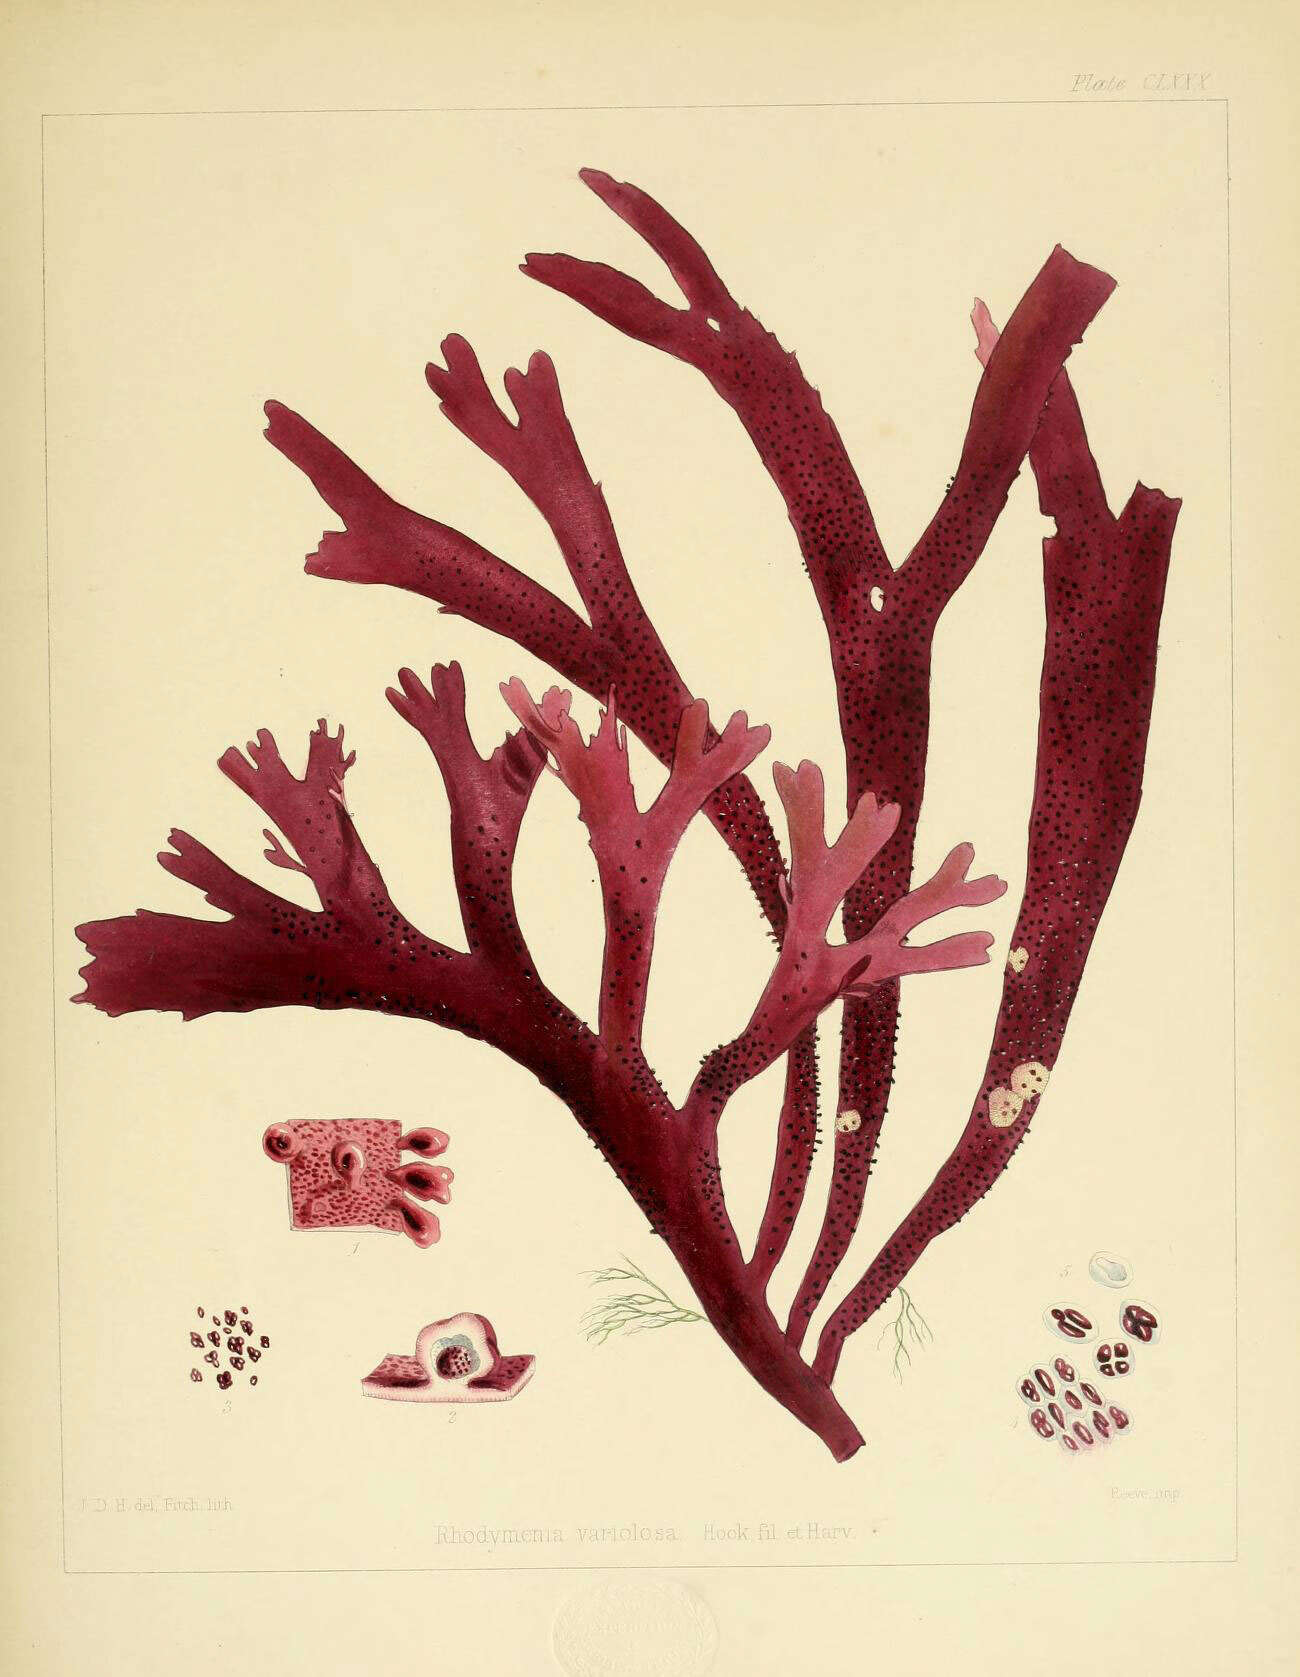 Image of Rhodymenia variolosa J. D. Hooker & Harvey 1845